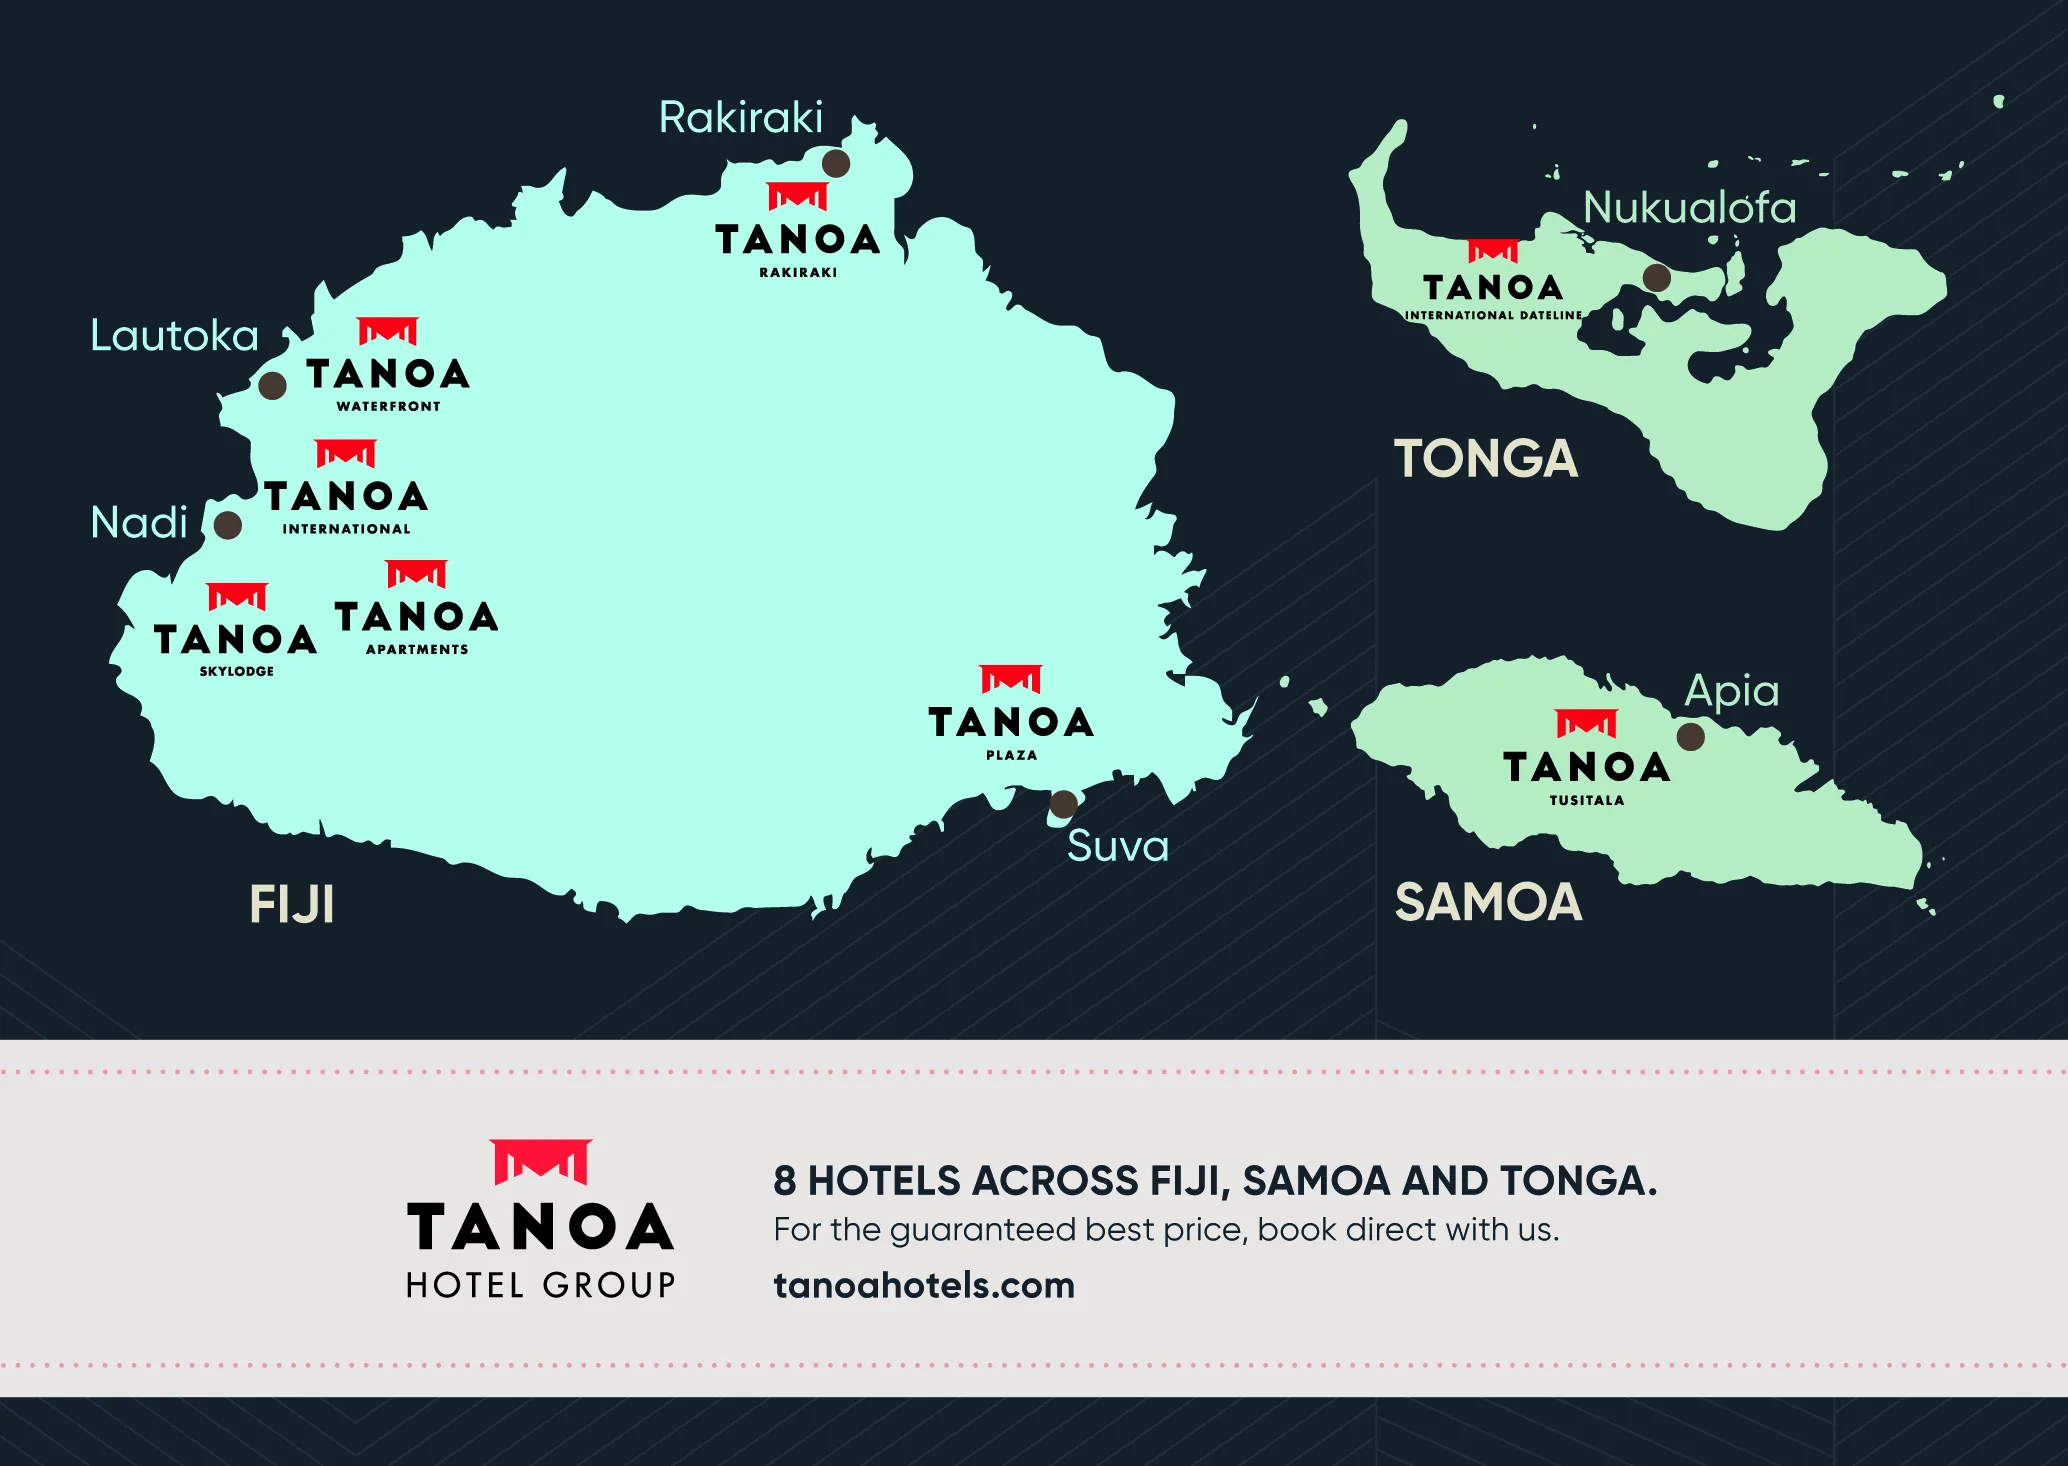 Tanoa Hotel Group